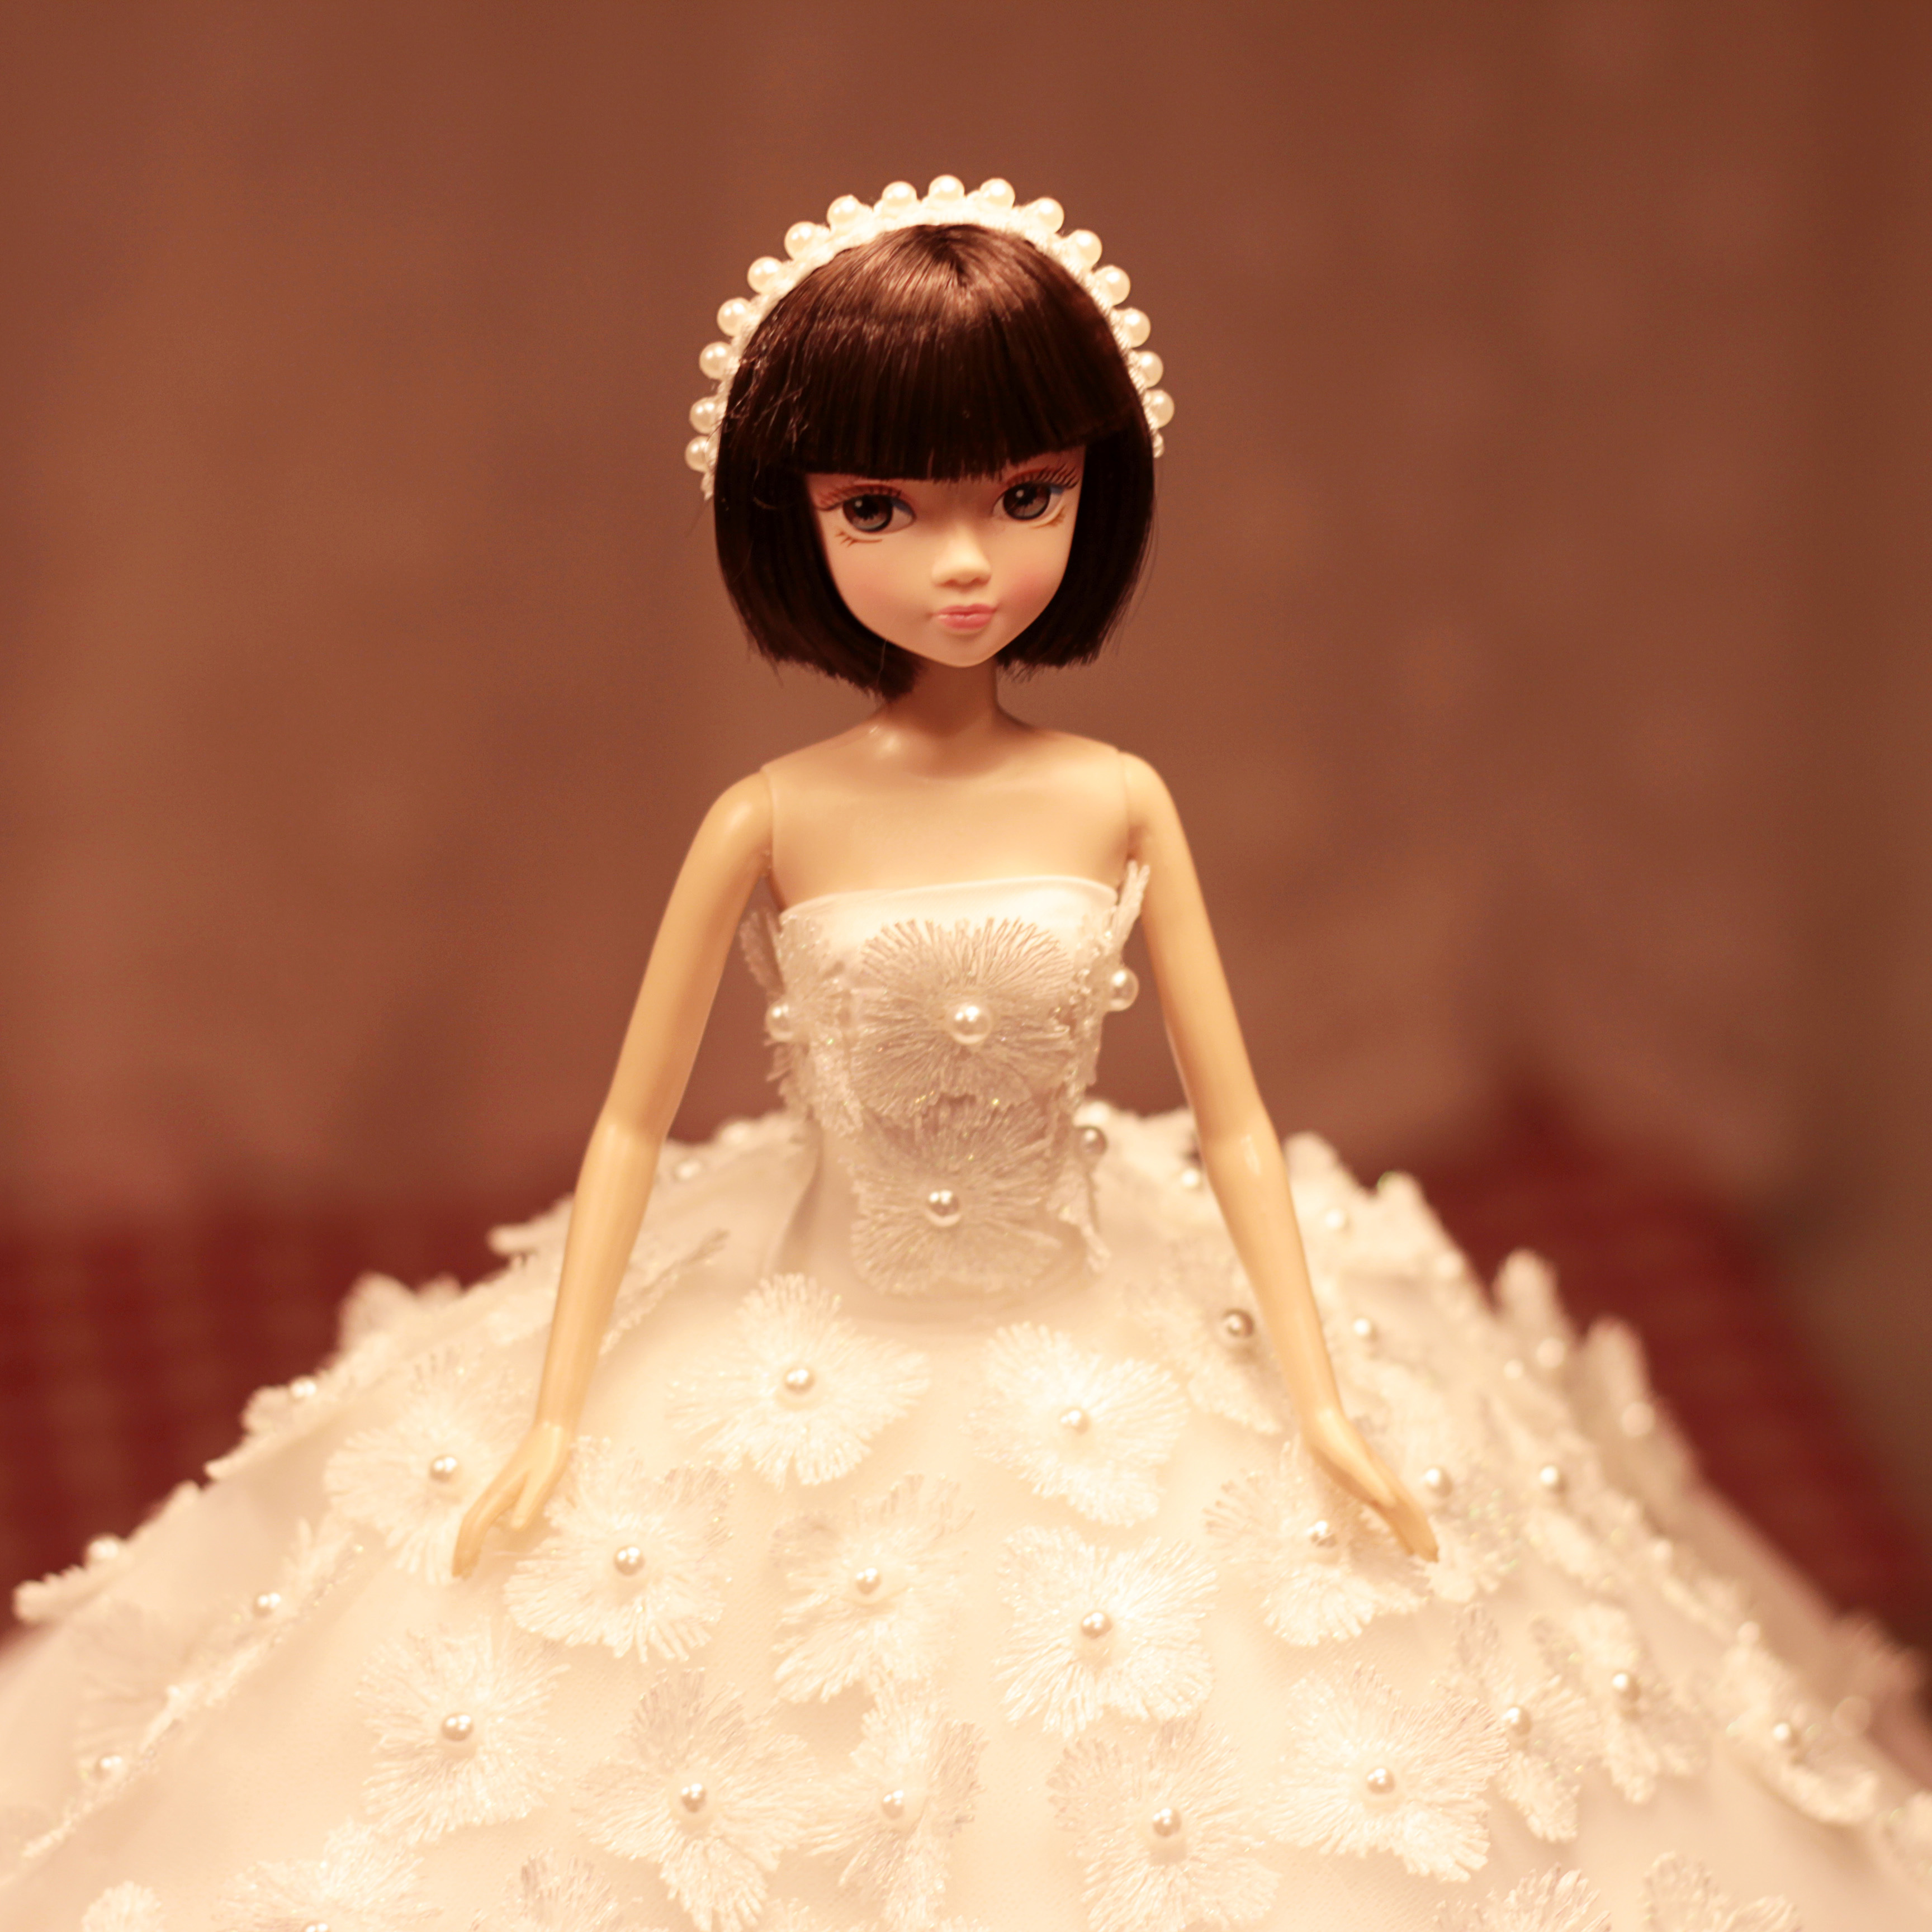 婚纱芭比娃娃创意玩具女孩公主过家家冰雪奇缘生日礼物单个洋娃娃-阿里巴巴